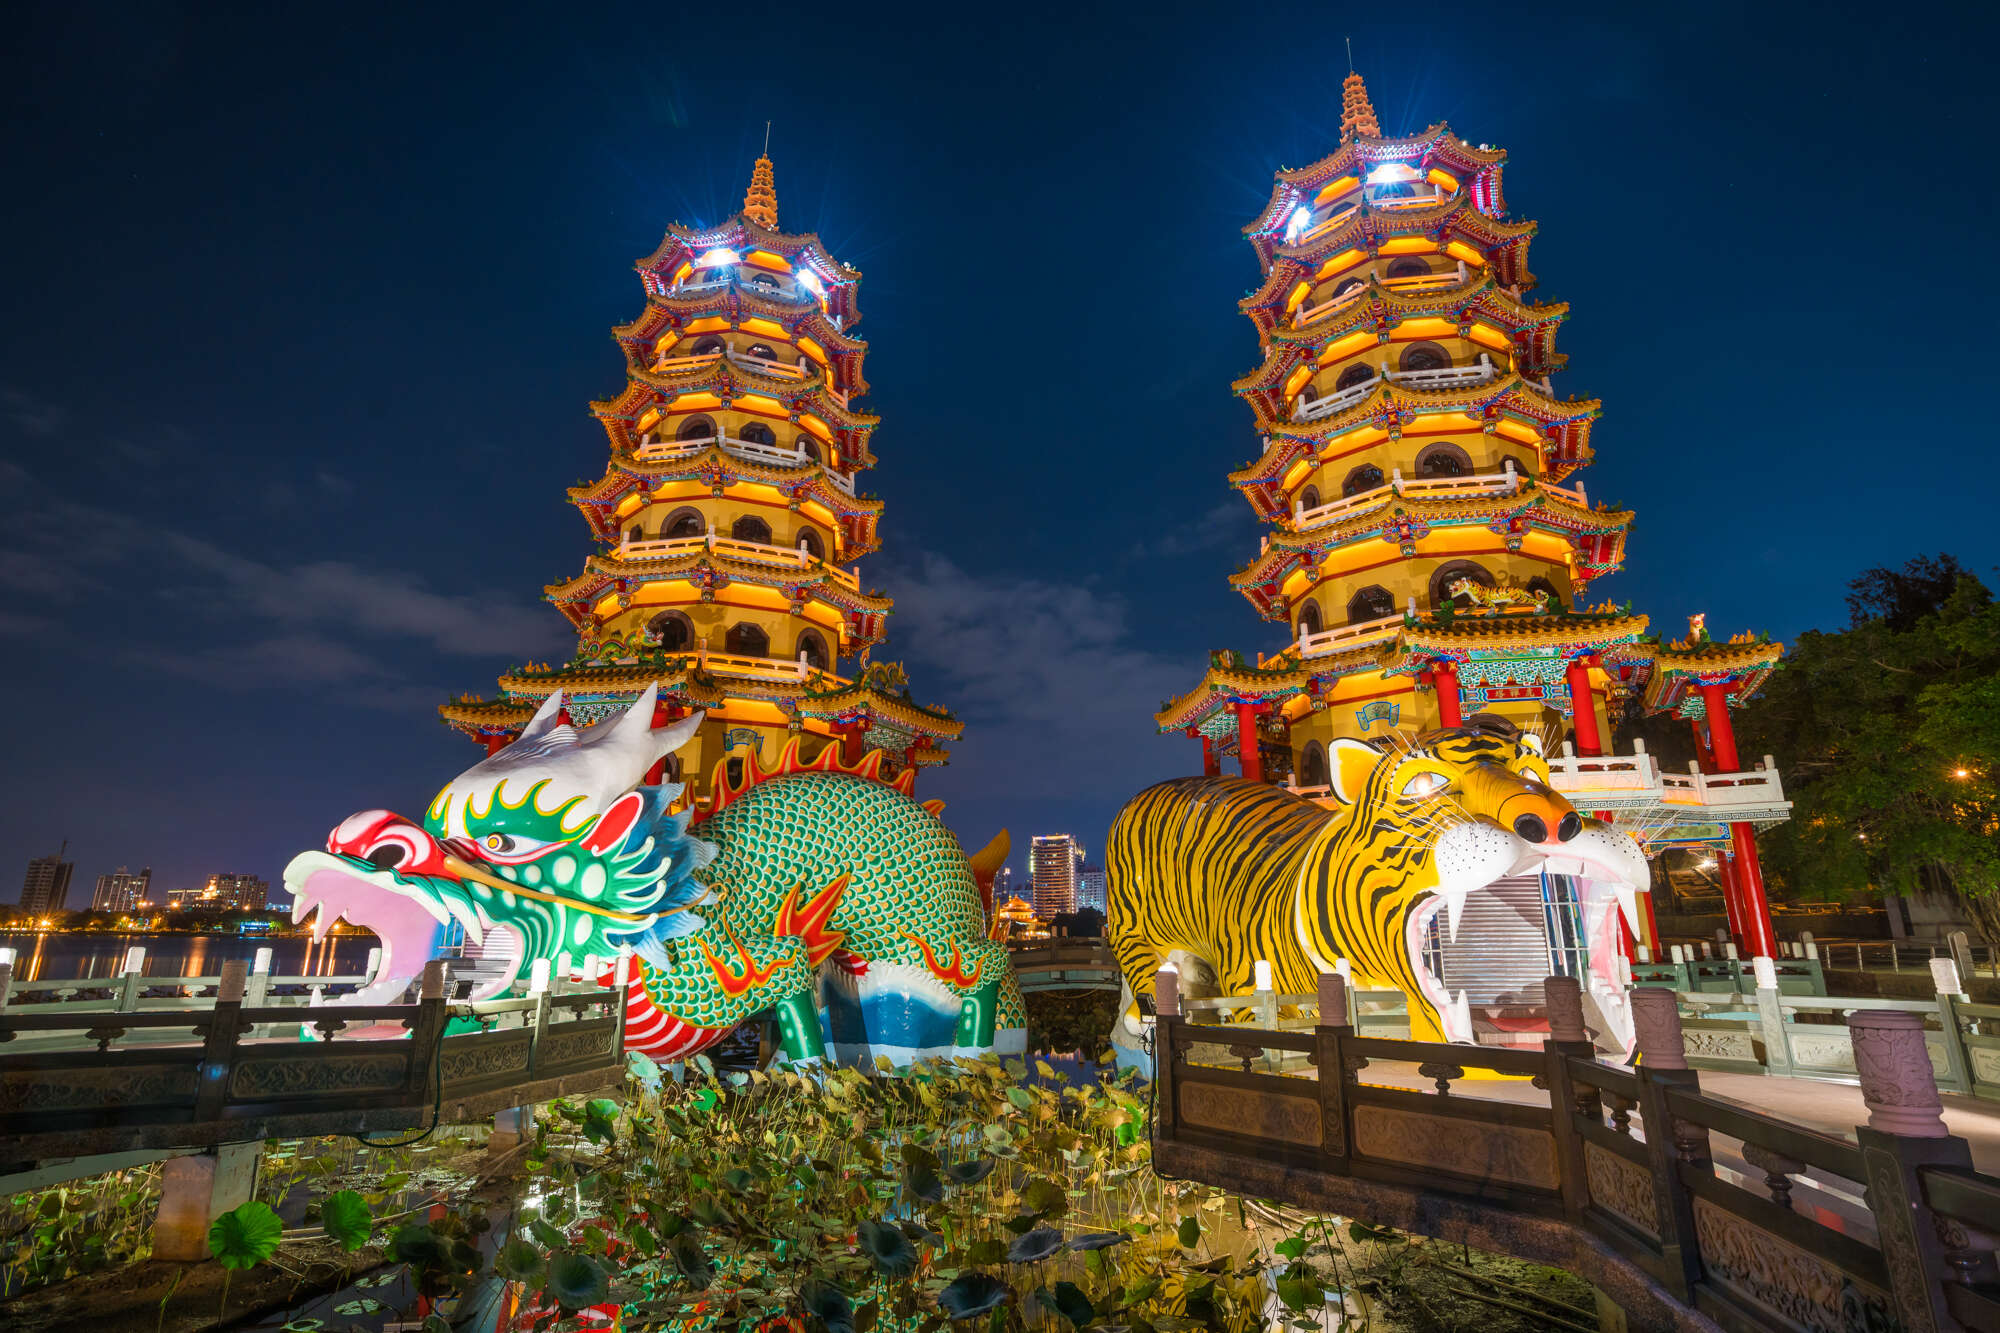 Dragon and Tiger Pagodas at lotus lake, Kaohsiung, Taiwan